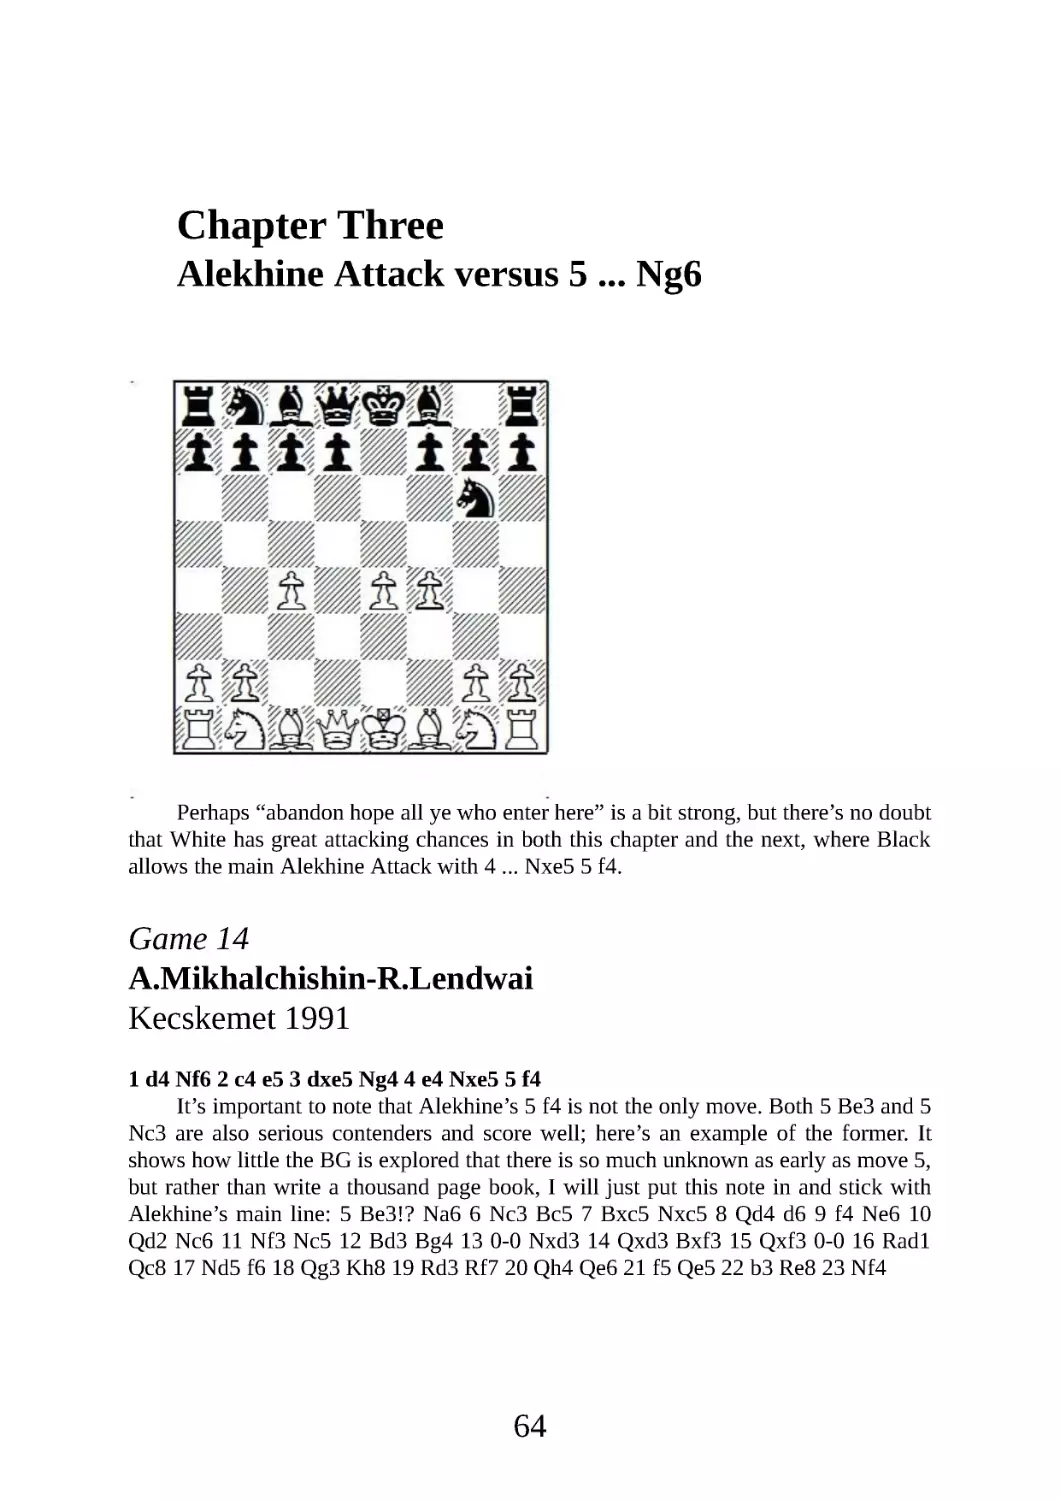 3 Alekhine Attack vs. 5 ... Ng6